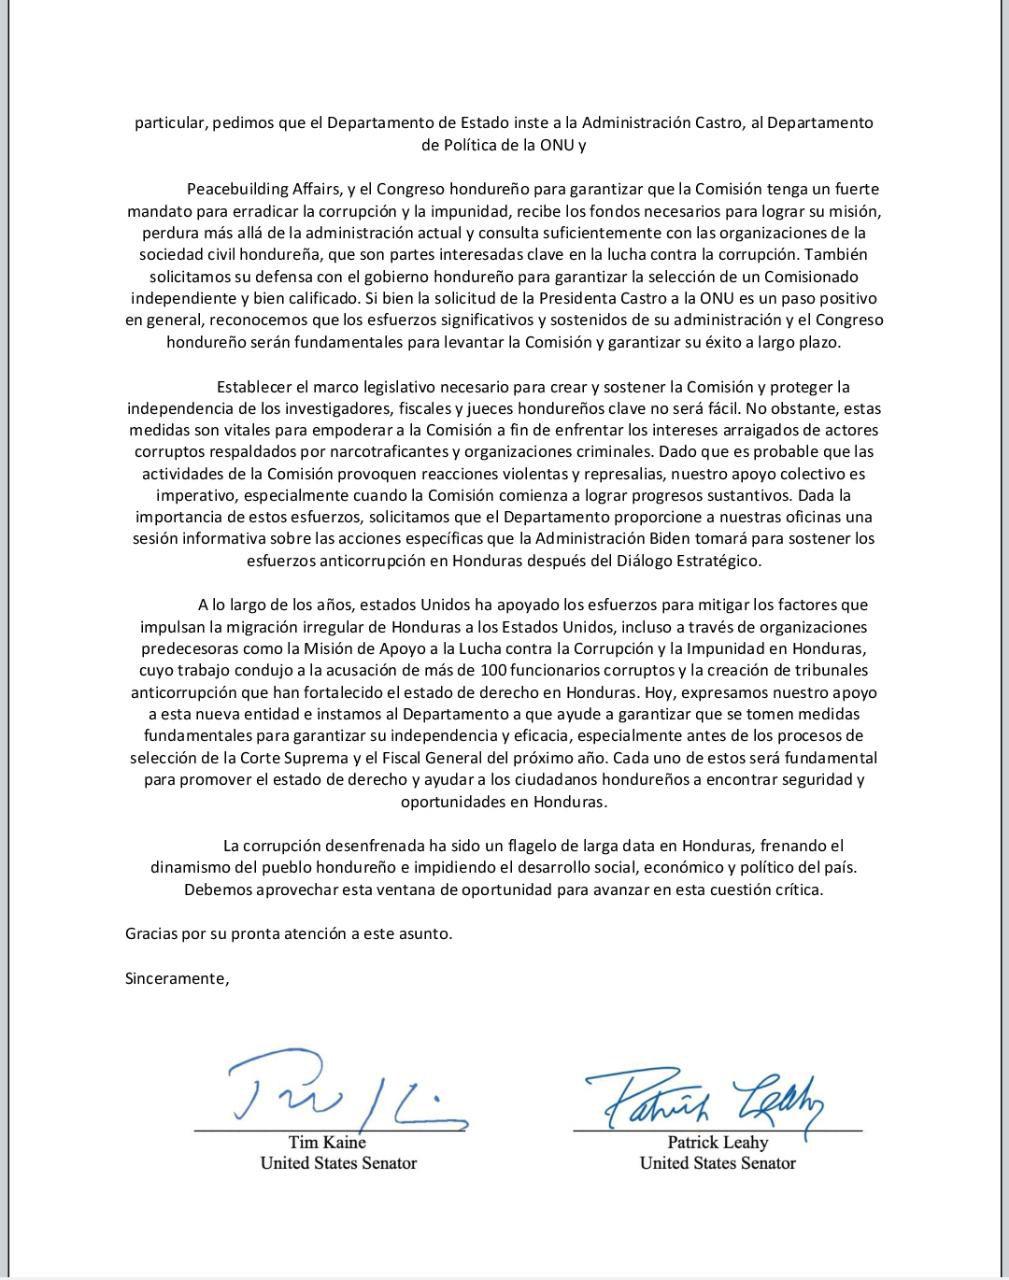 Carta íntegra traducida al español sobre lo escrito por los senadores estadounidenses.